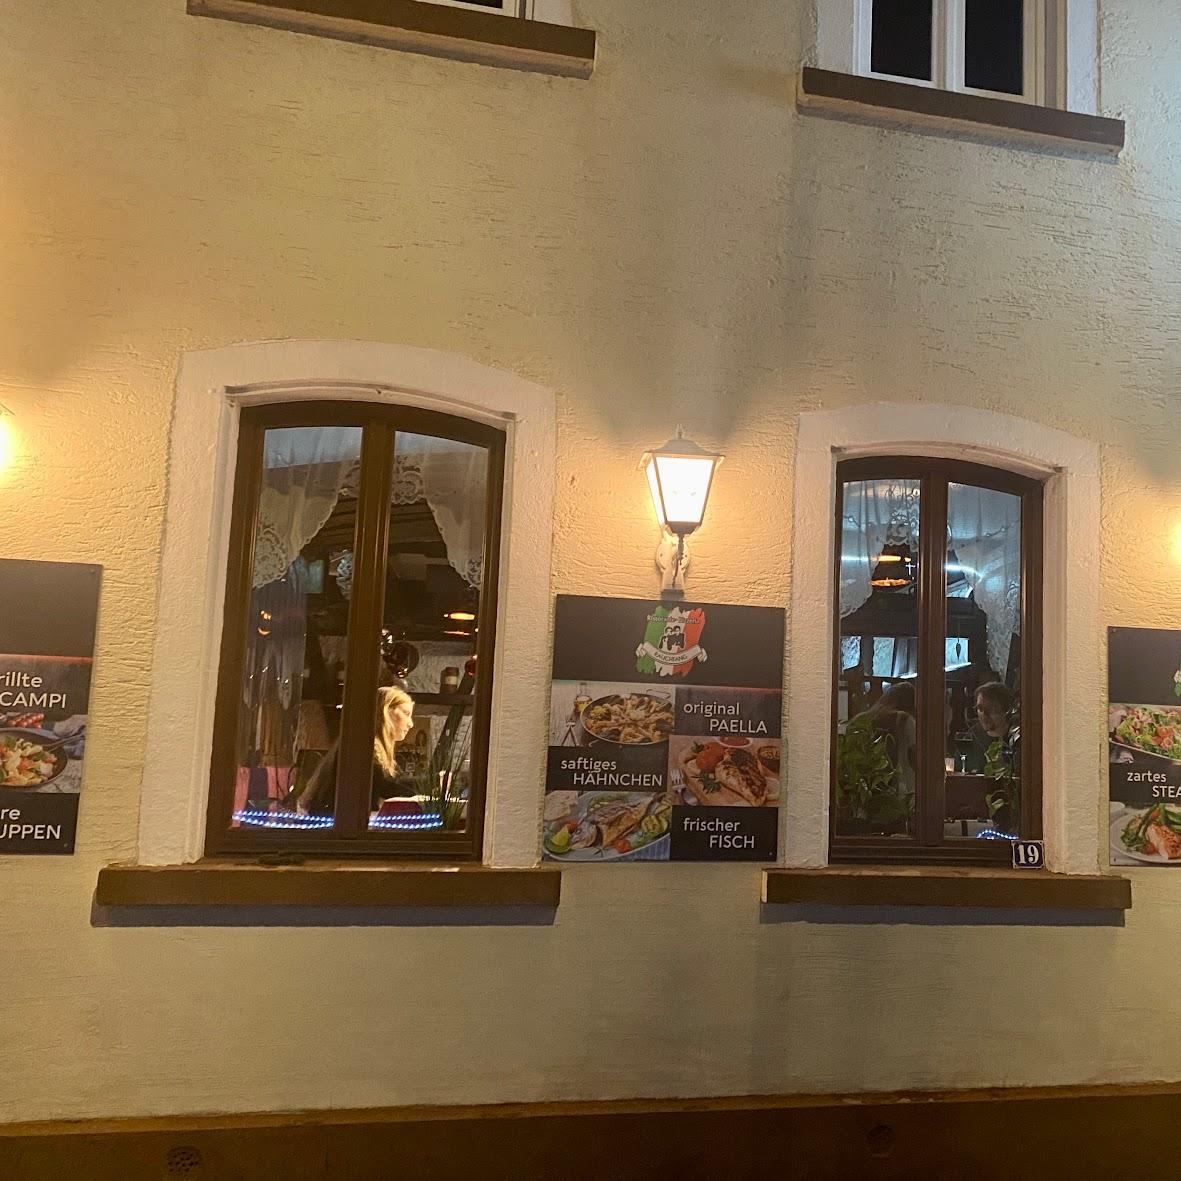 Restaurant "Ristorante Pizzeria - Rauchfang" in Aalen